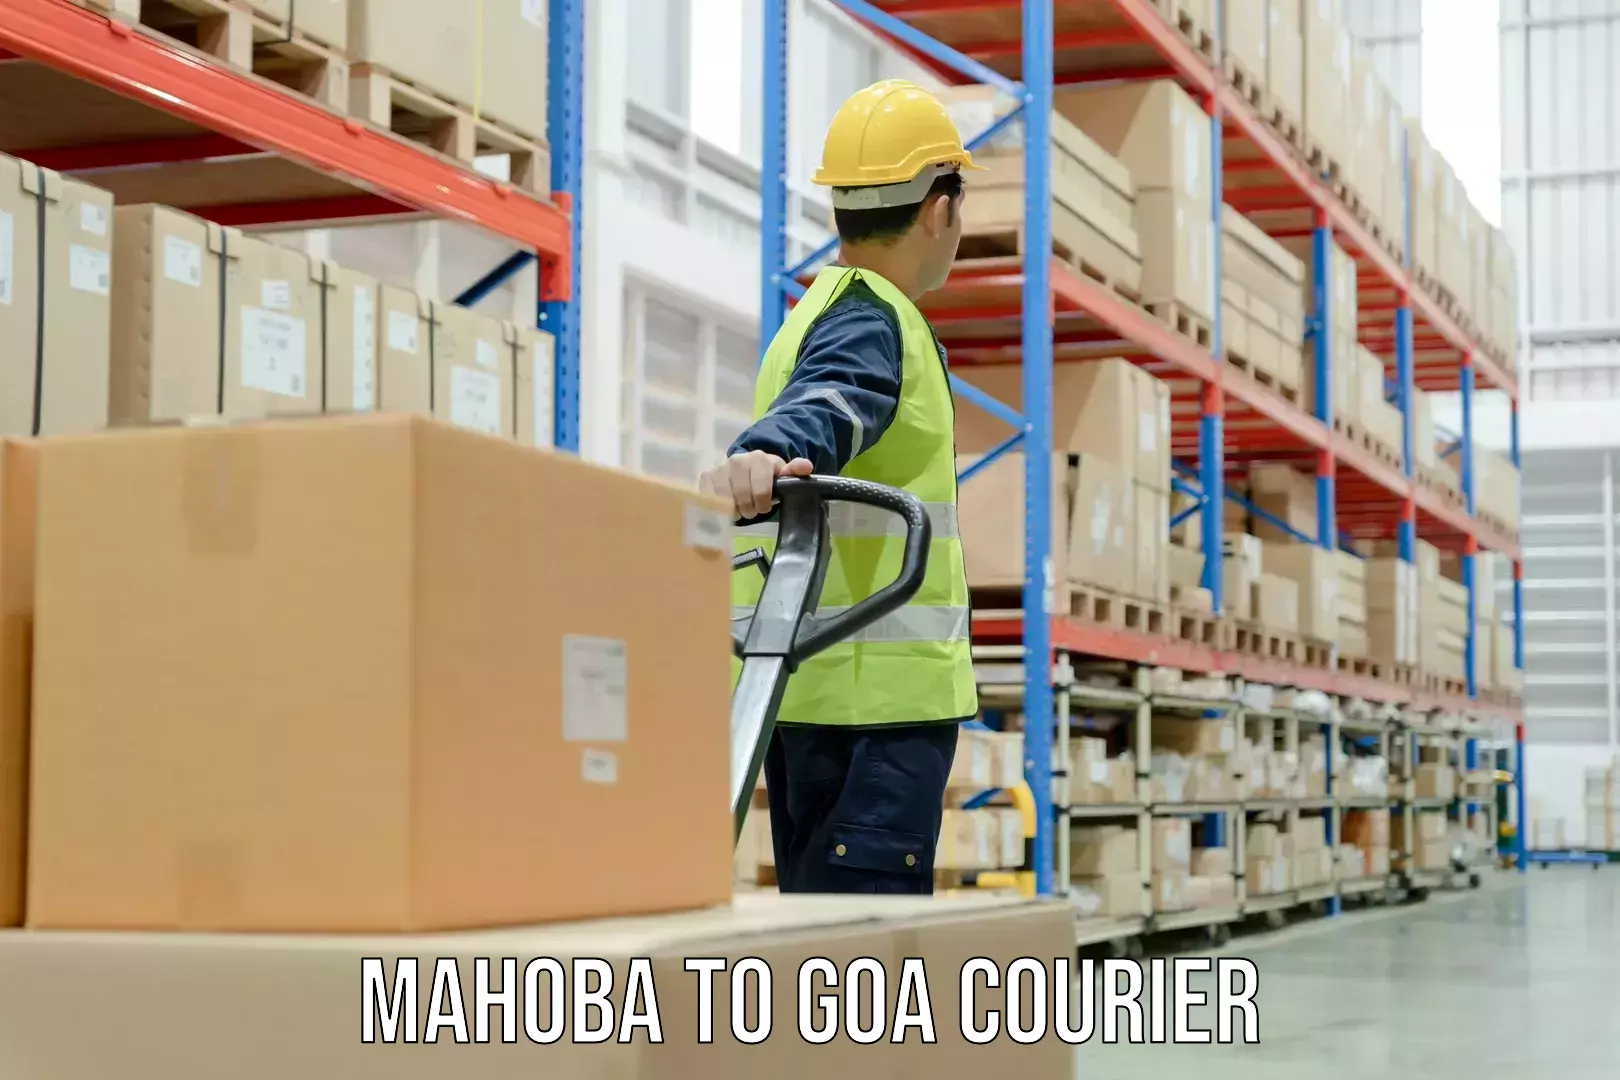 High-capacity parcel service Mahoba to Margao